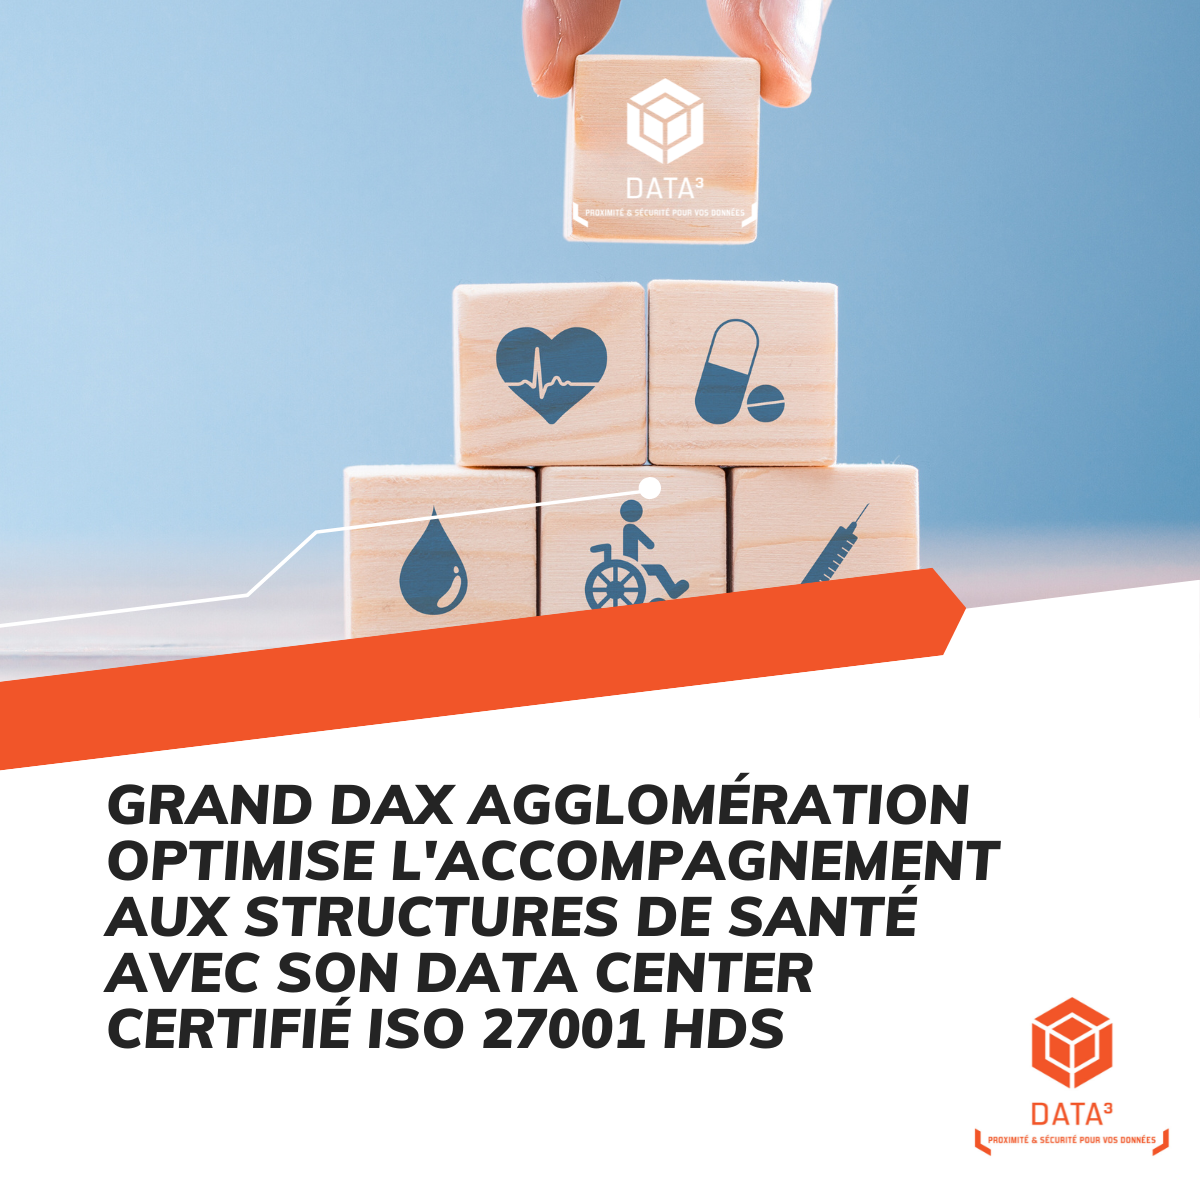 Grand dax agglomération optimise l'accompagnement aux structures de santé avec son data center certifié iso 27001 hds